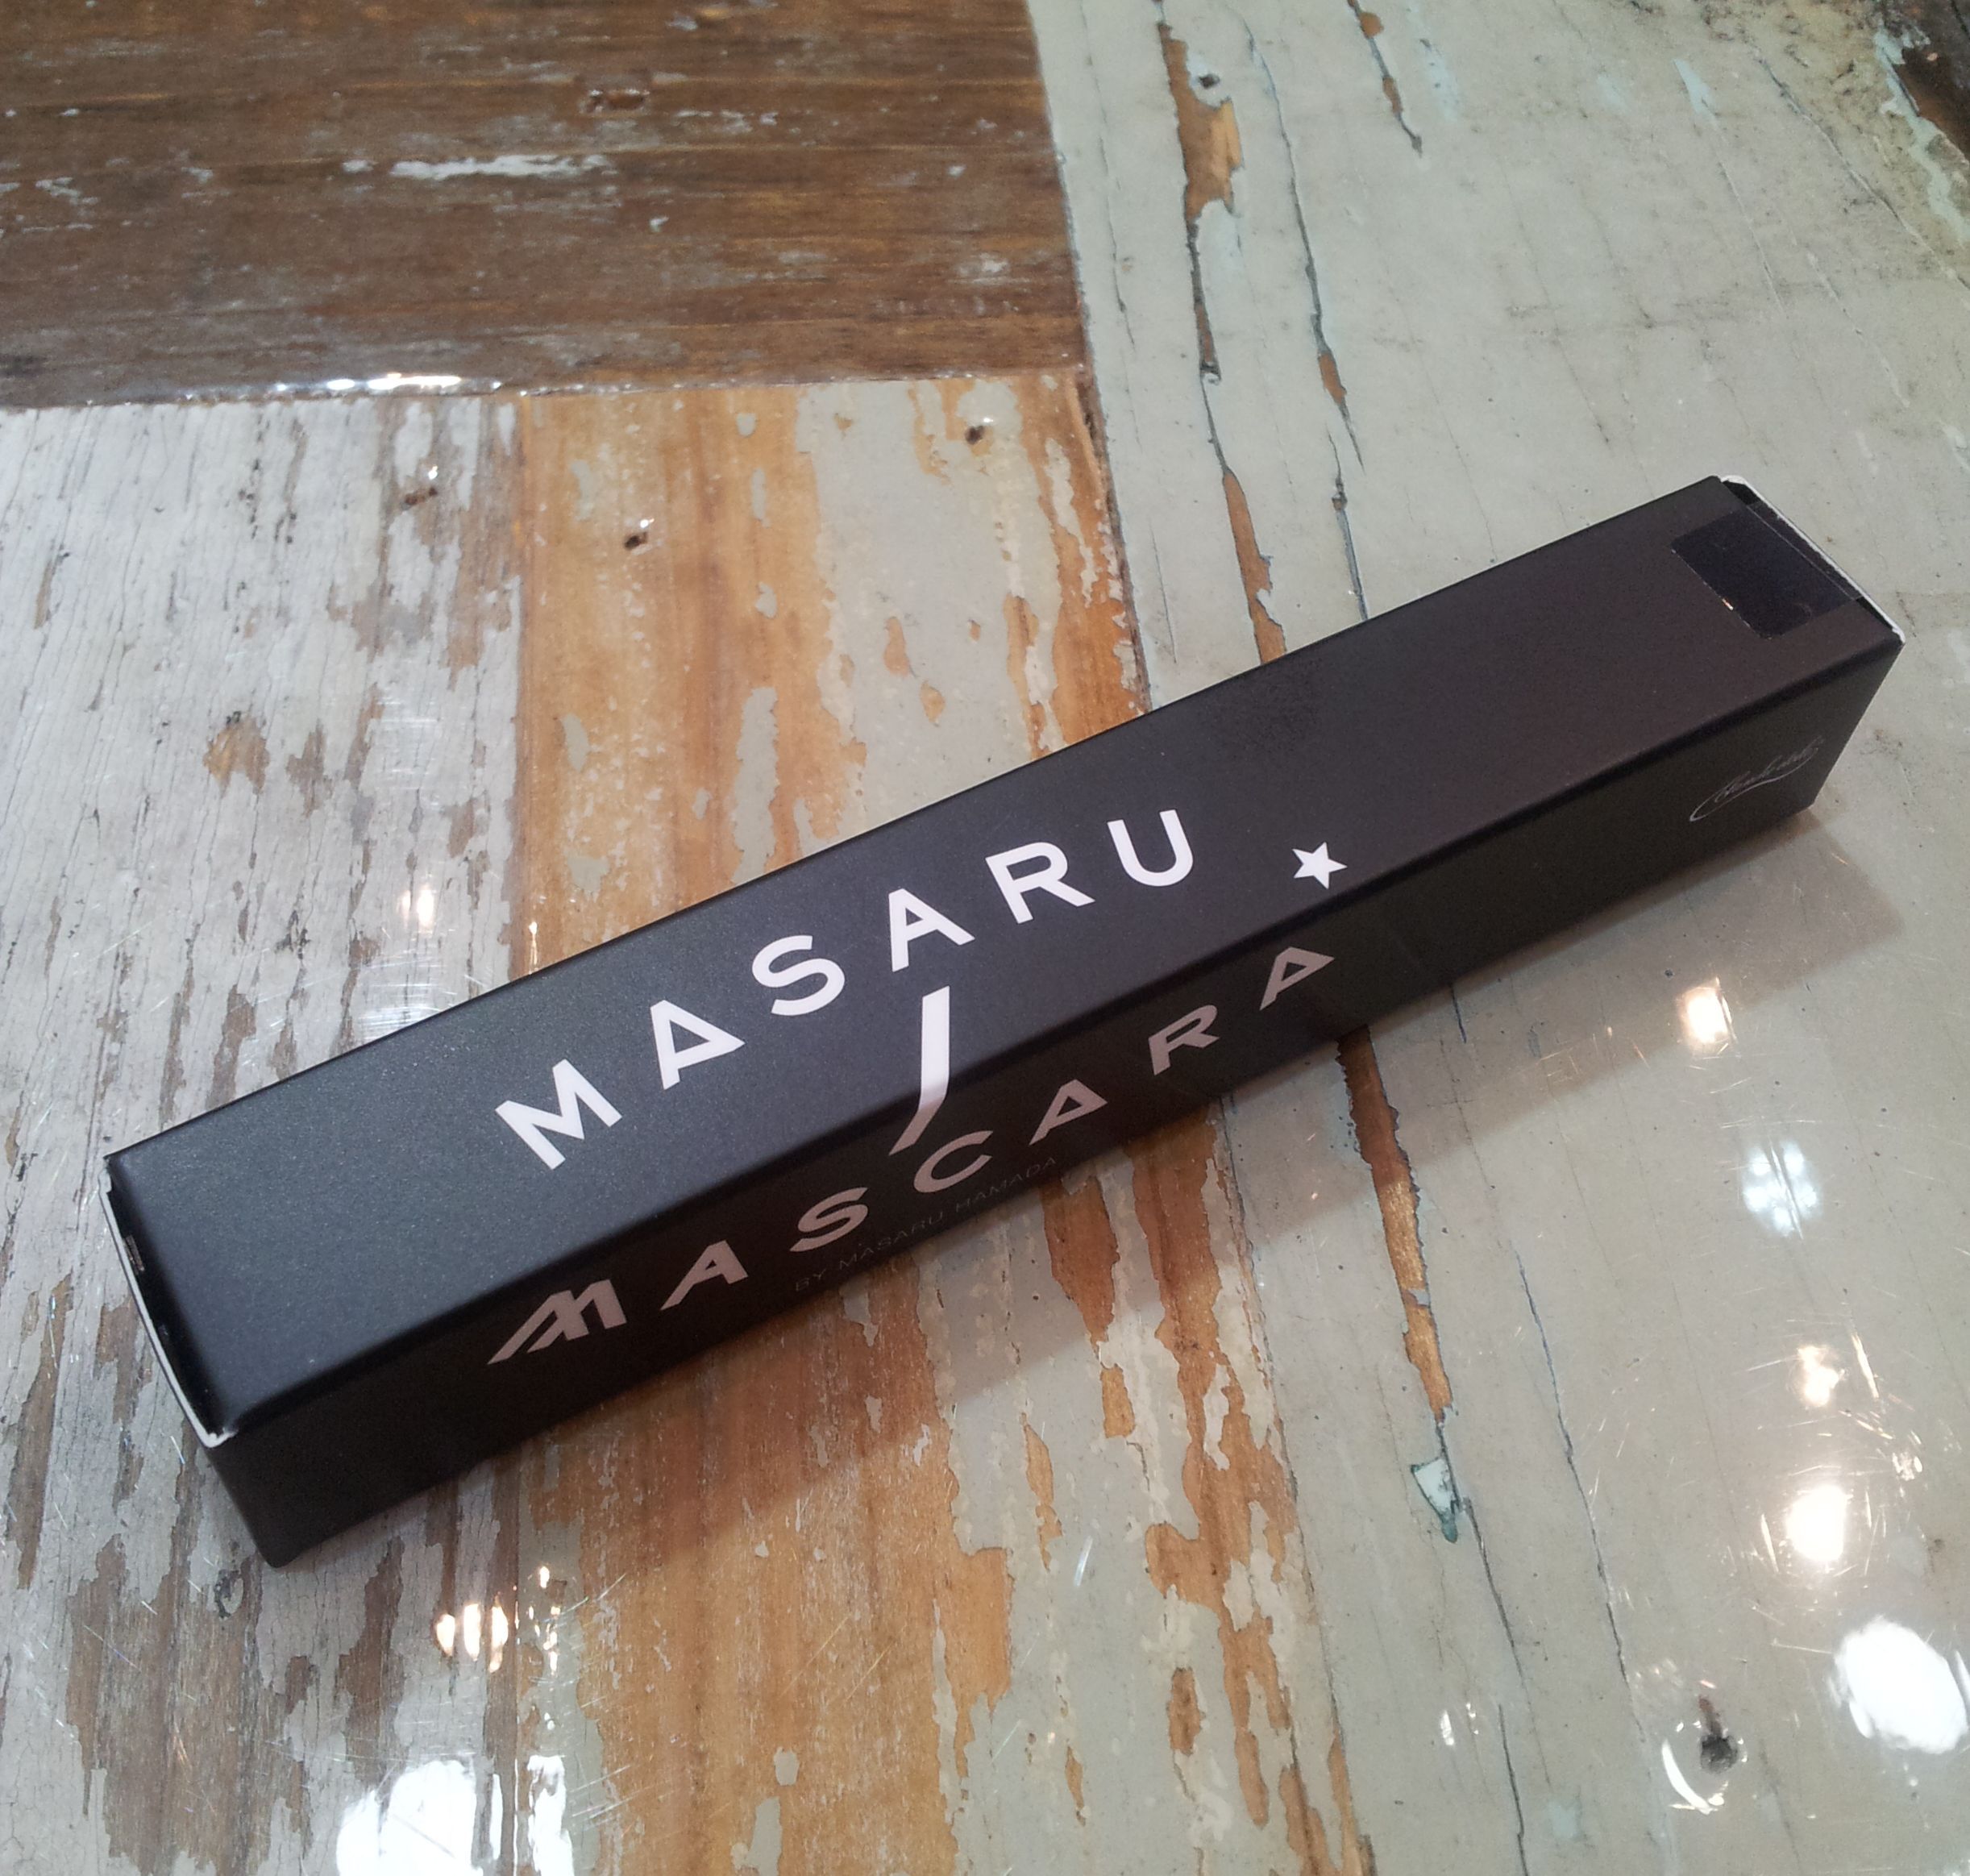 新製品 濱田マサルさんプロデュースのマスカラ Masaru Mascara の魅力とは Cosme編集部さんのブログ Cosme アットコスメ